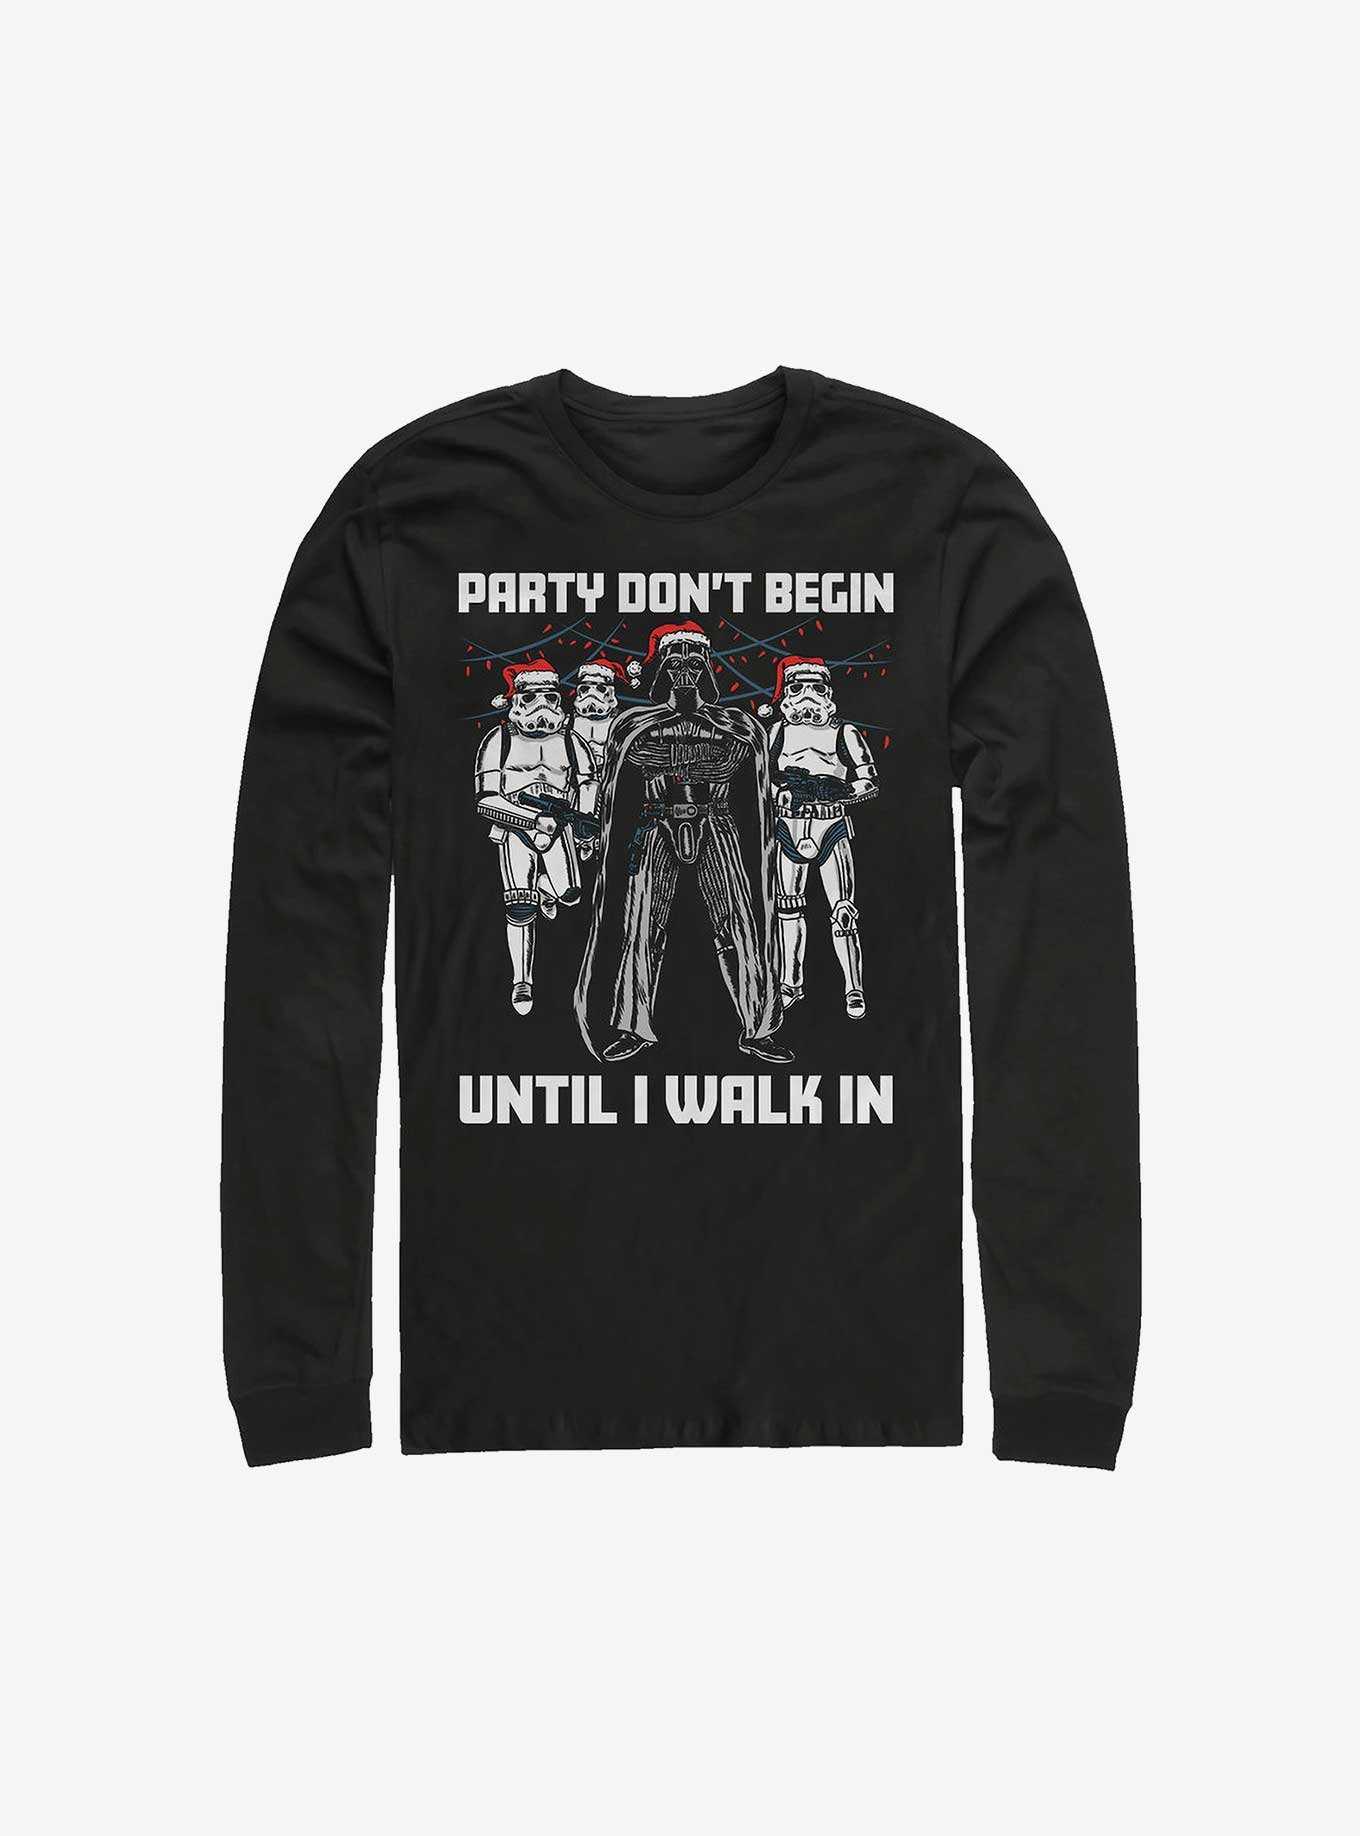 Star Wars Darth Vader Party Don't Begin Long-Sleeve T-Shirt, , hi-res